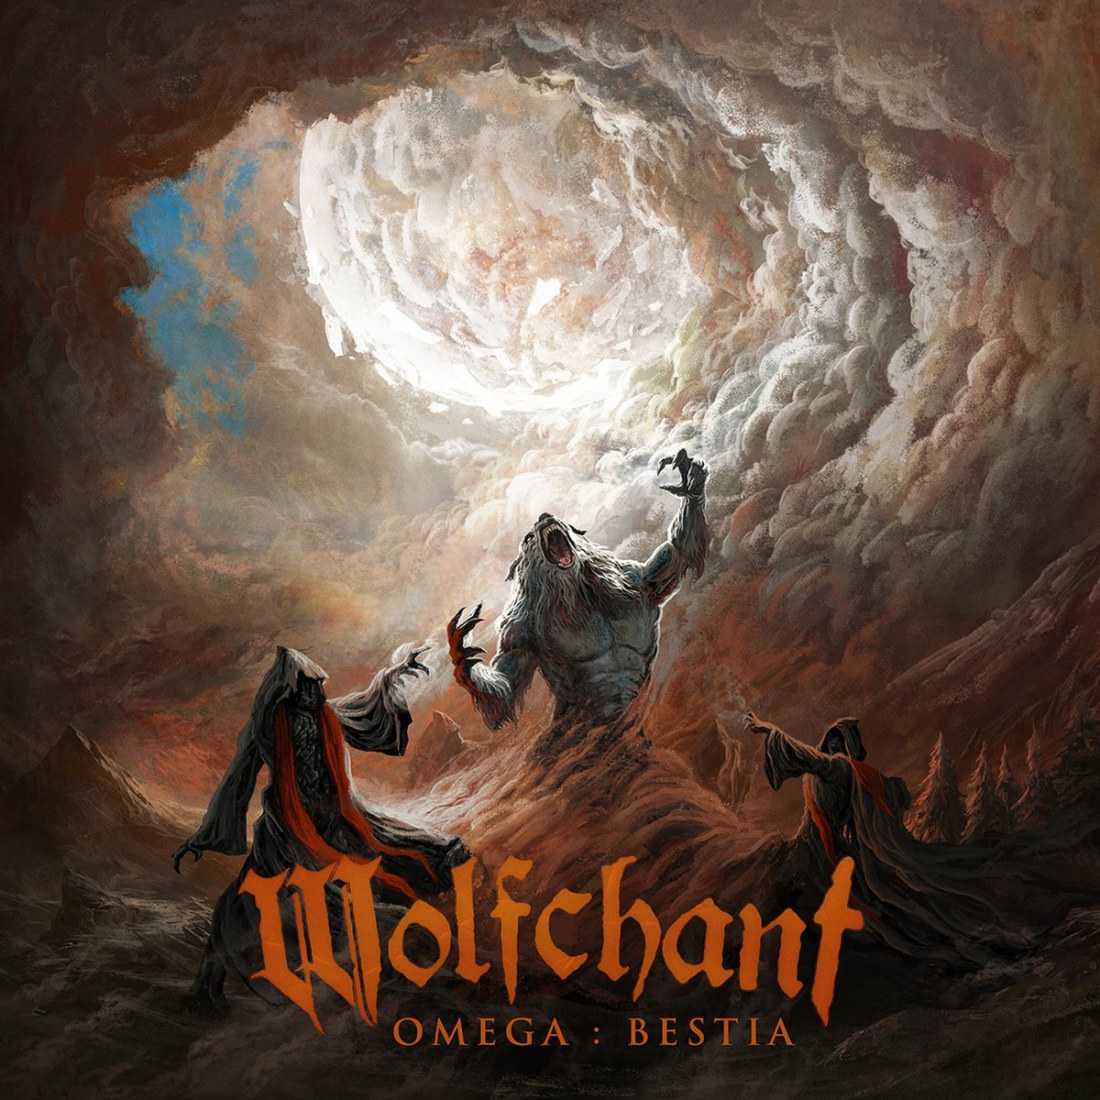 Wolfchant - Omega  Bestia